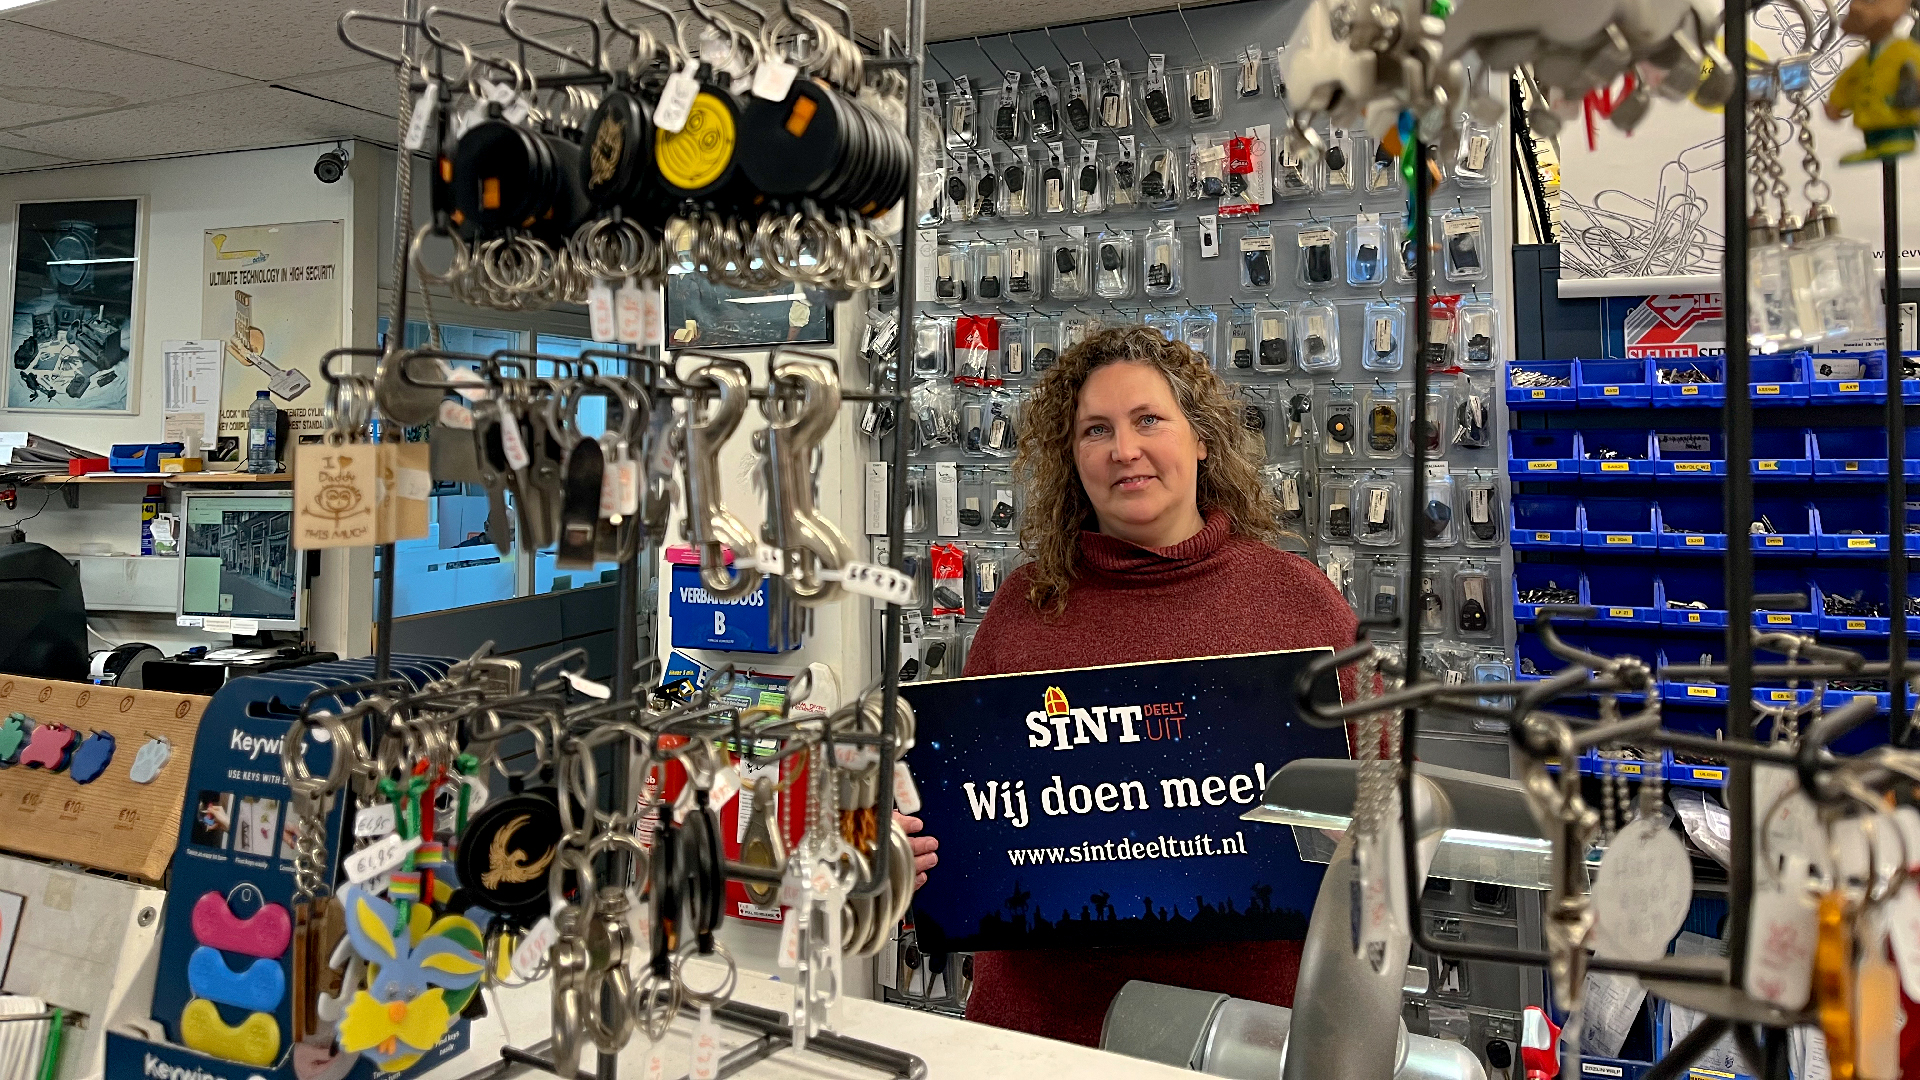 Onbevredigend propeller apotheker Adema Sleutelspecialist doet mee aan Sint Deelt Uit!